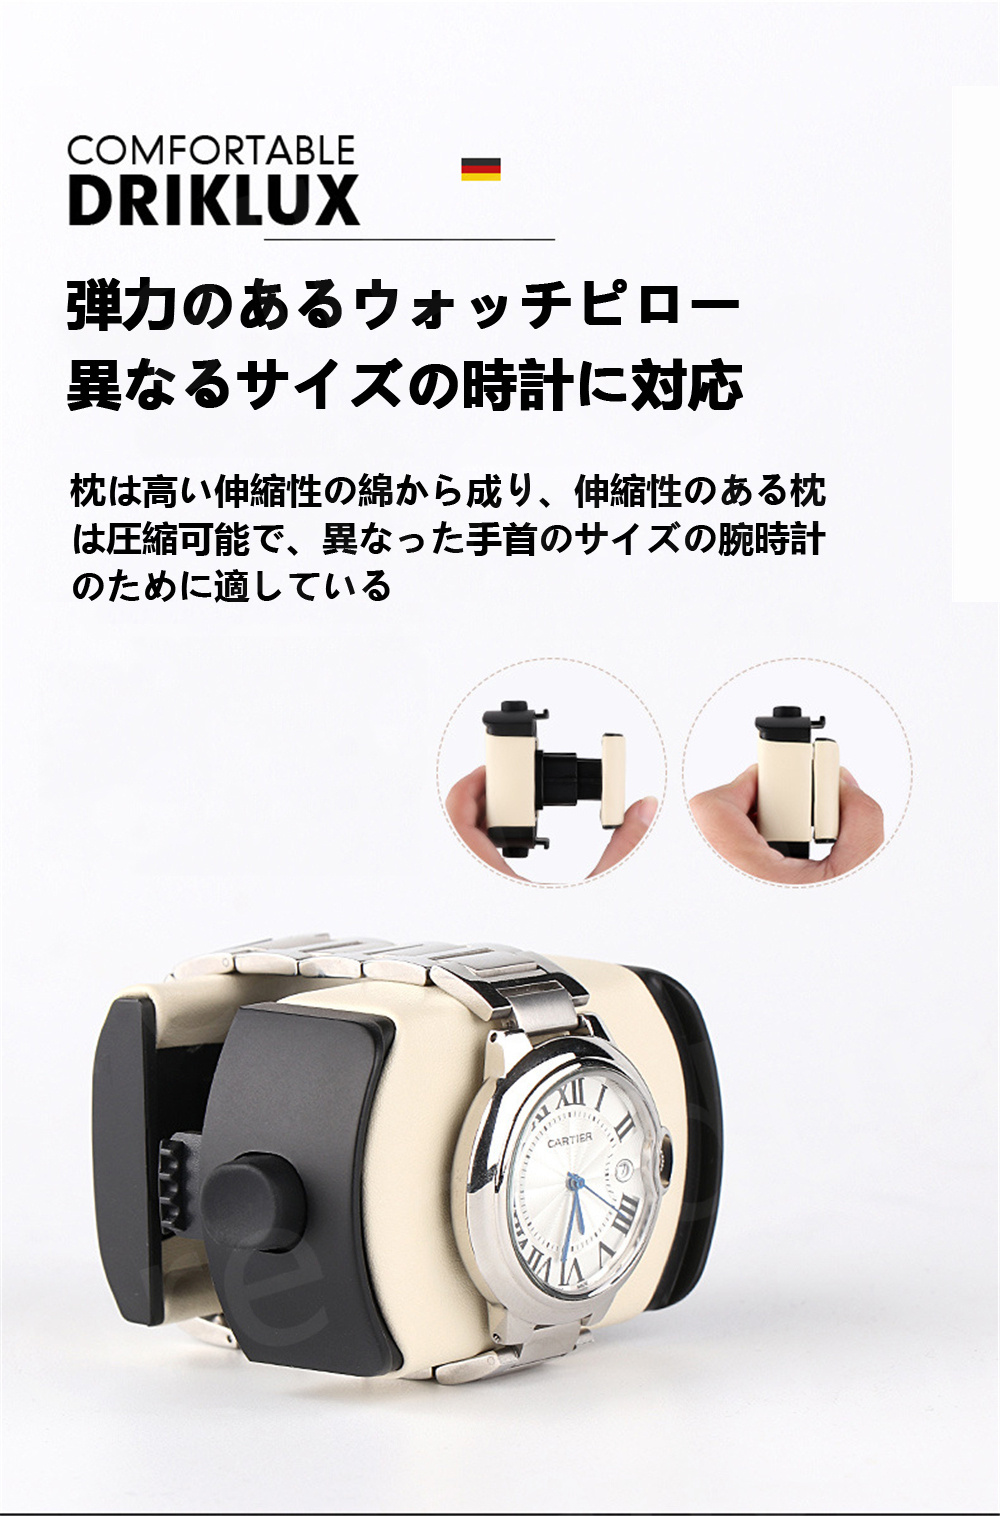 最愛 令和最新版 ワインディングマシーン 4本巻き 6本収納 ウォッチワインダー 自動巻き時計ワインディングマシーン 日本製 マブチモーター 超静音設計  高級 腕時計自動巻き上げ機 腕時計収納ケース 男女の腕時計は全部使えます 2021年アップグレード fucoa.cl